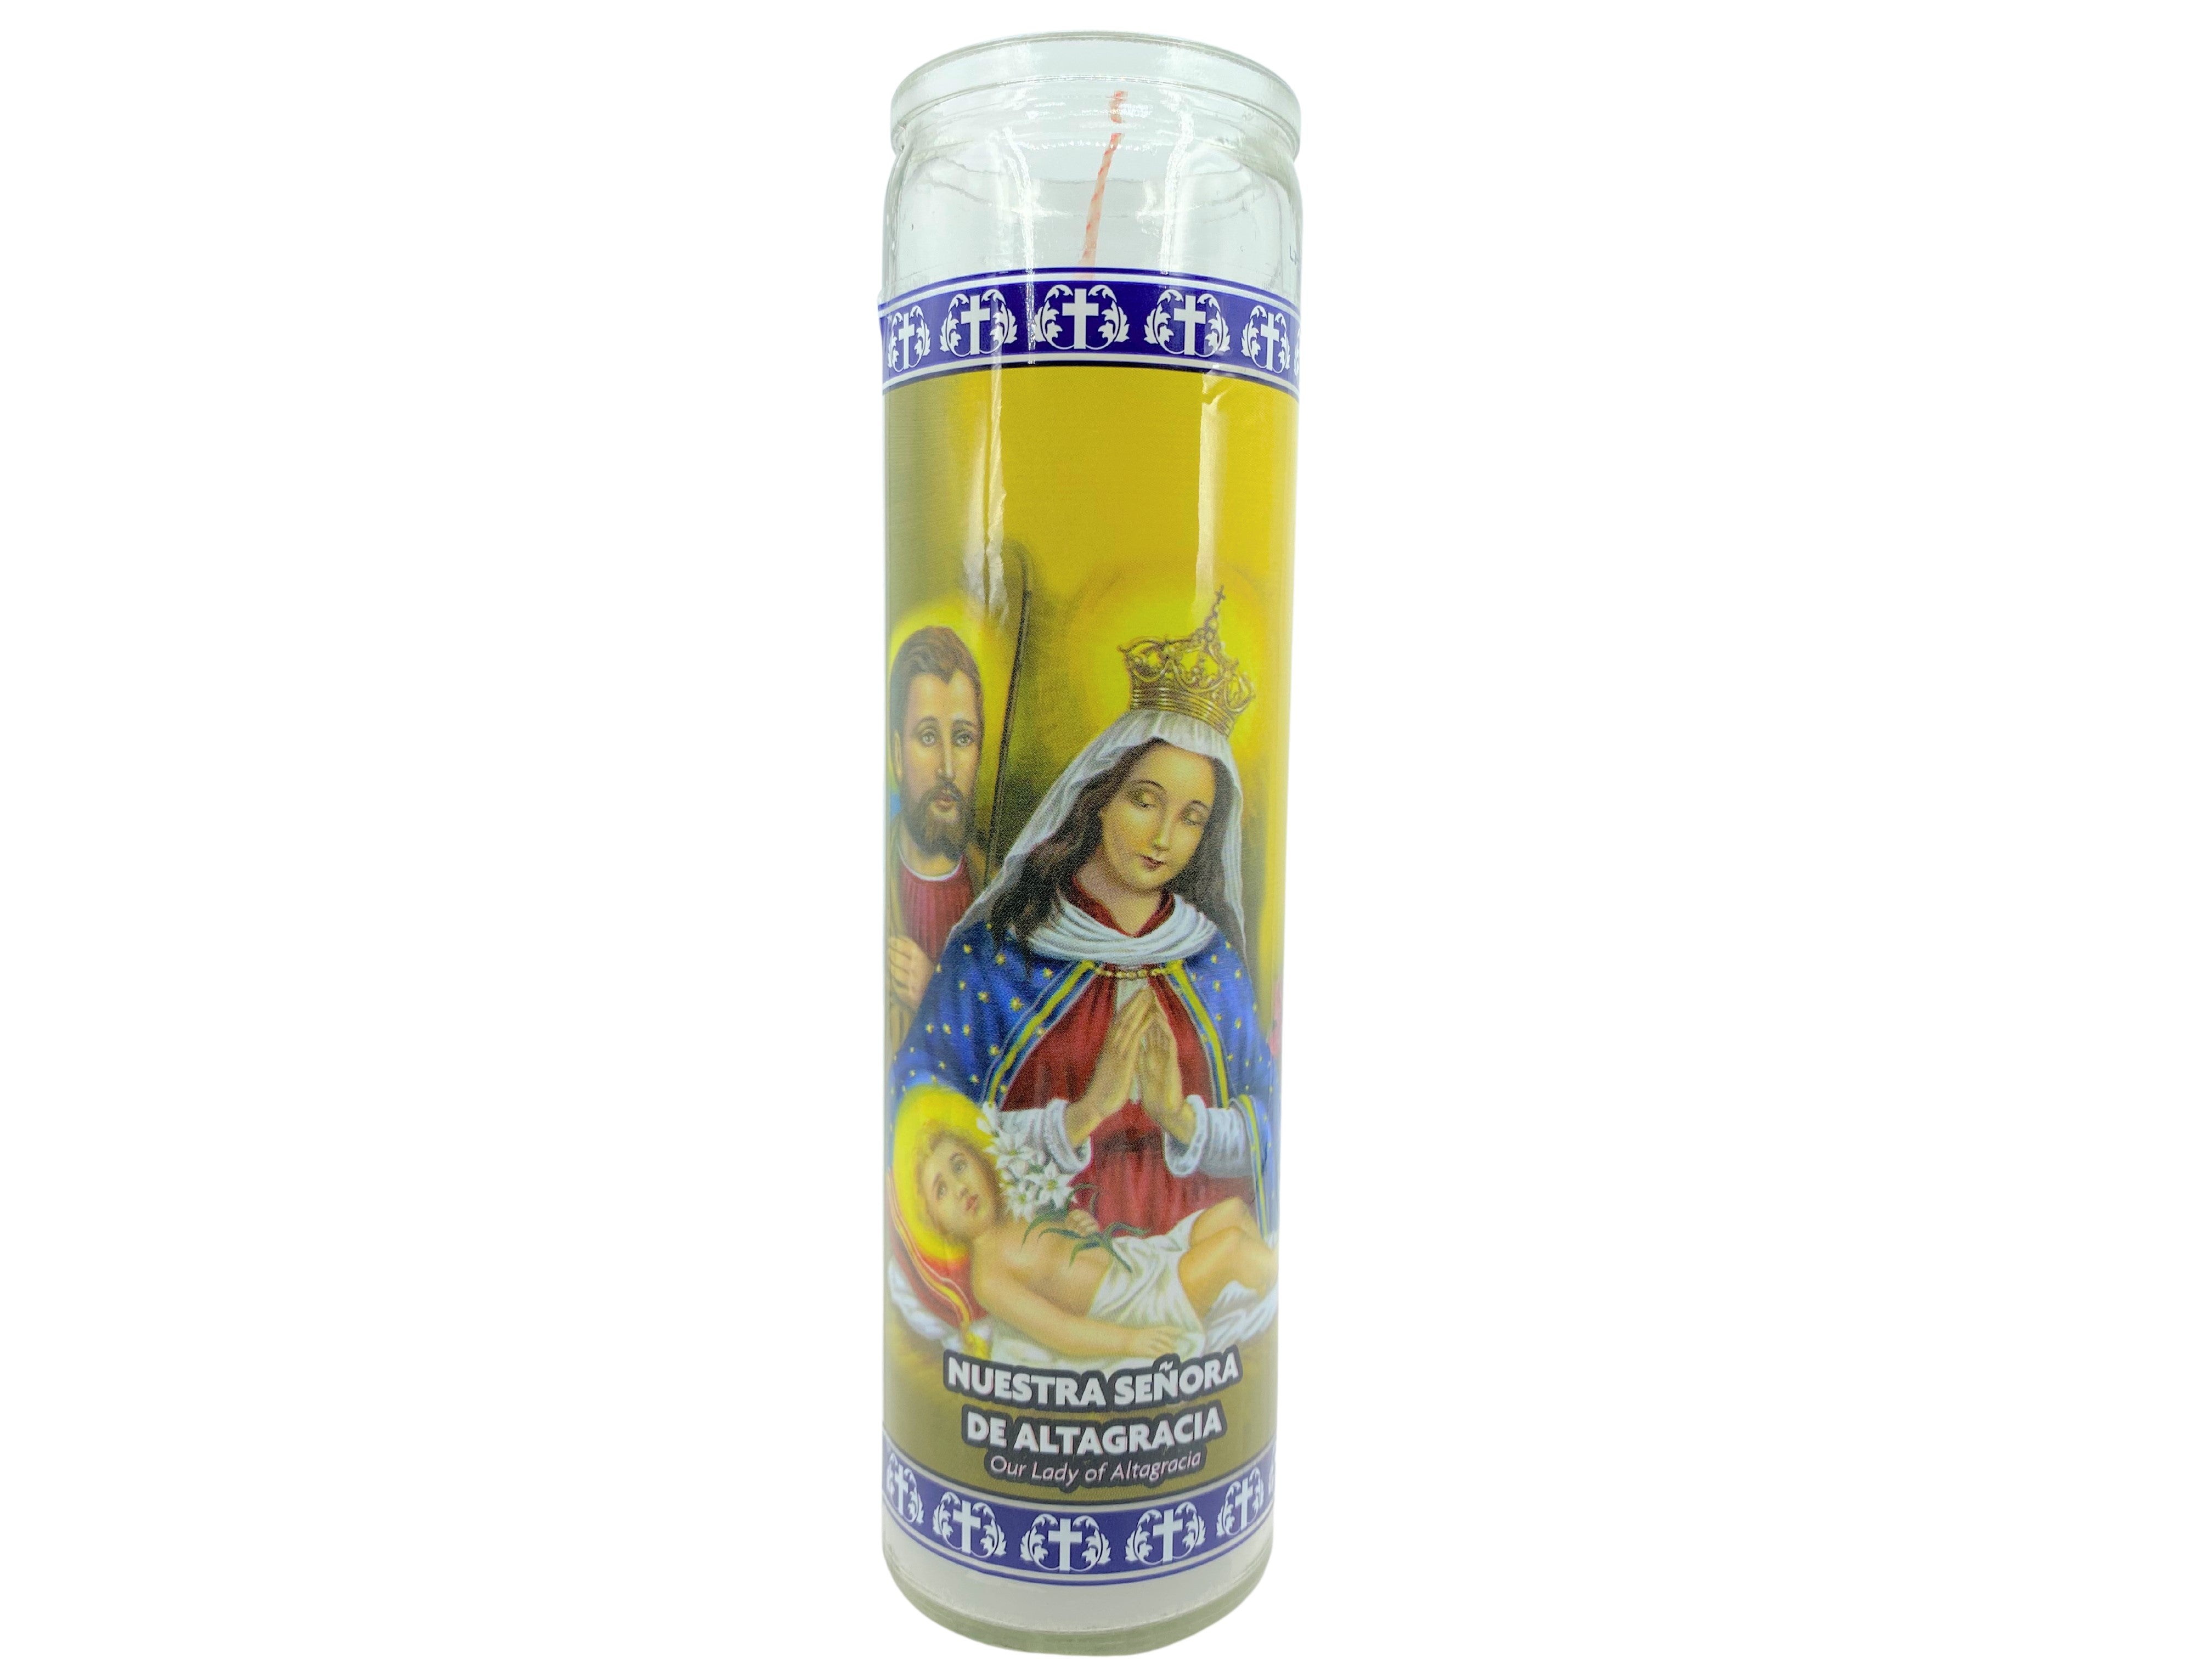 Candles of Our Lady of Altagracia /Velas de Nuestra Sra. de Altagracia